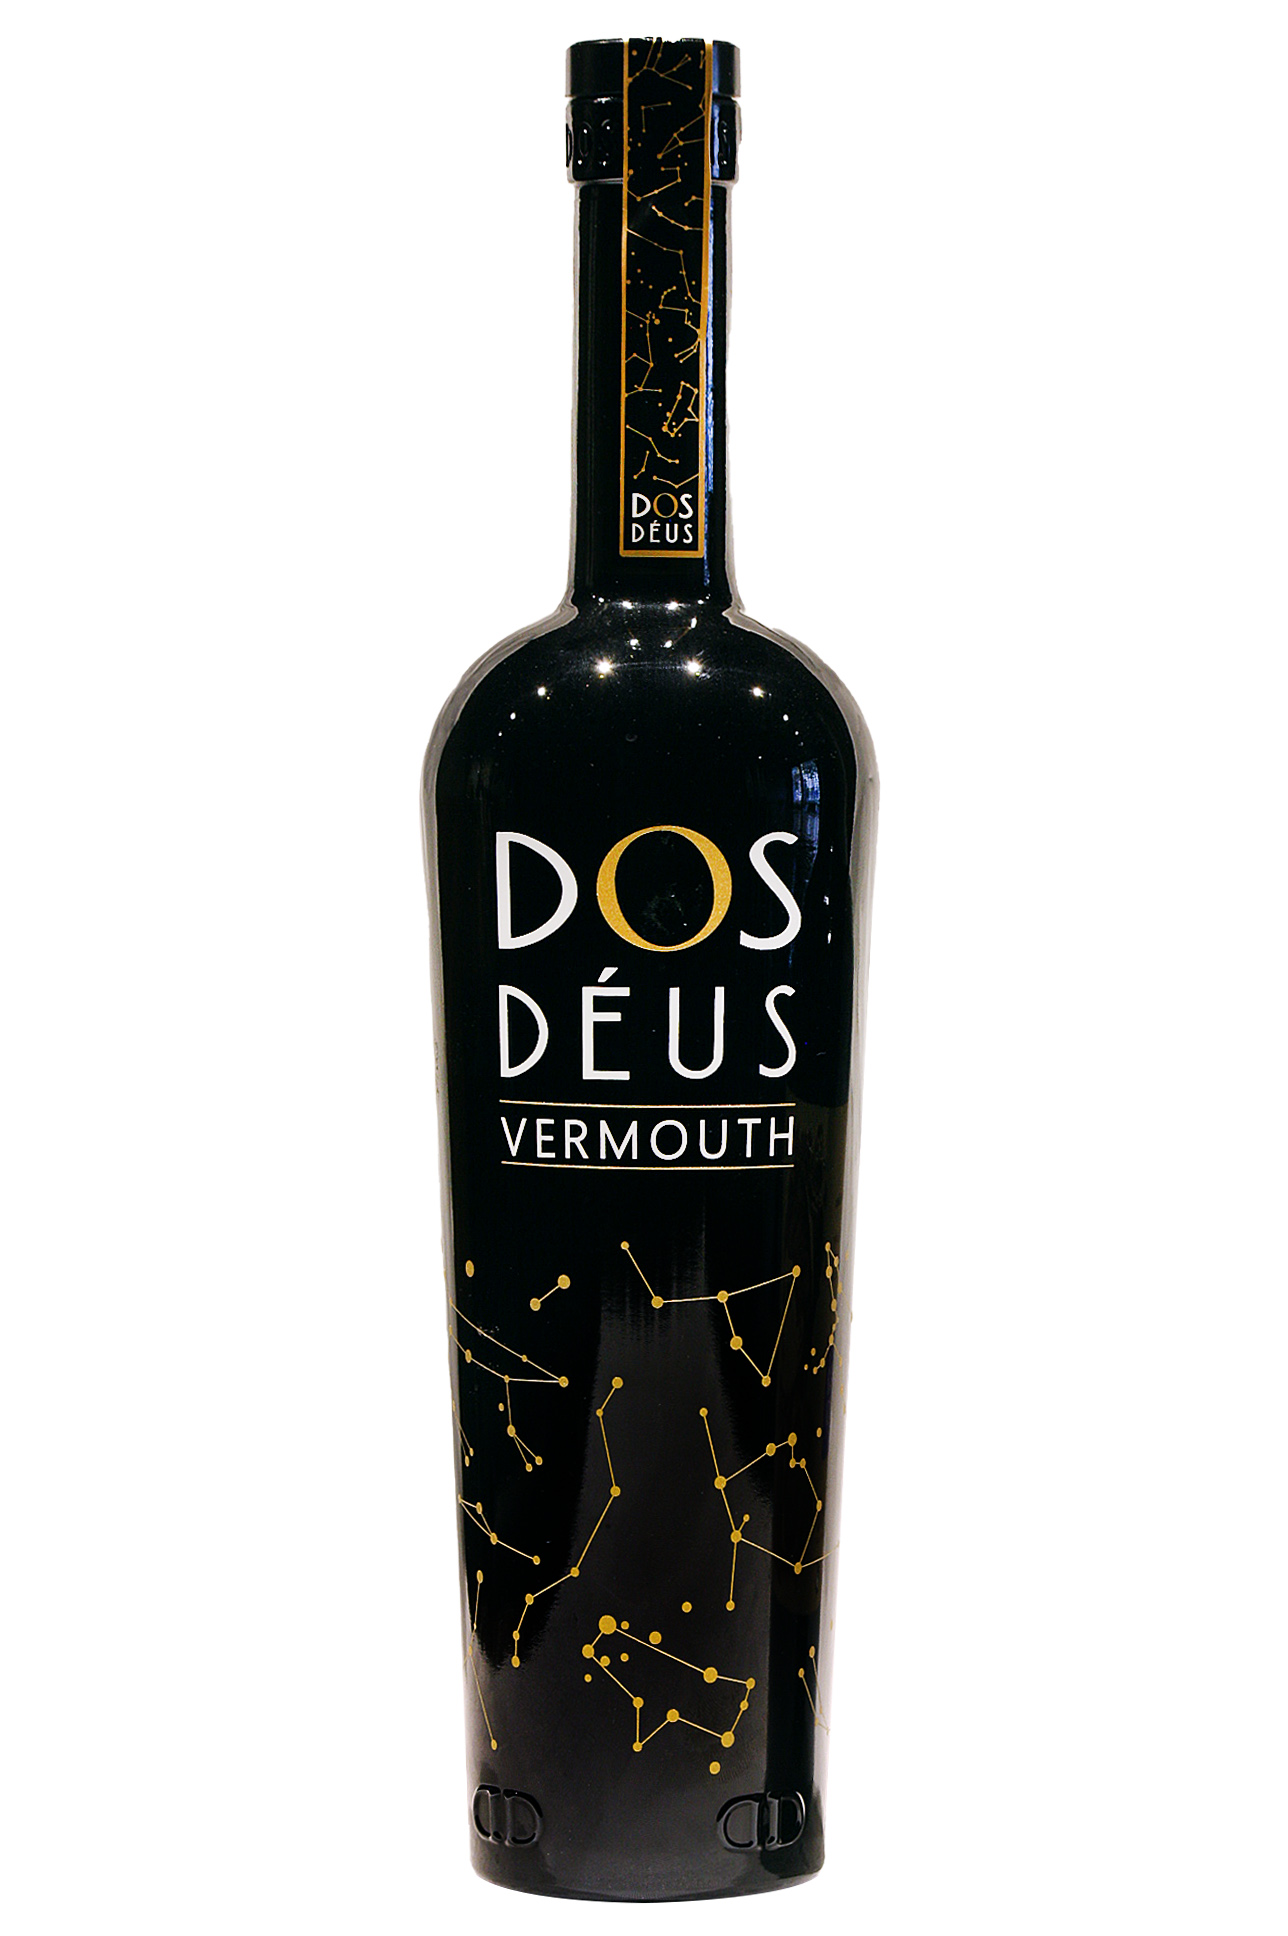 Dos deus vermouth 